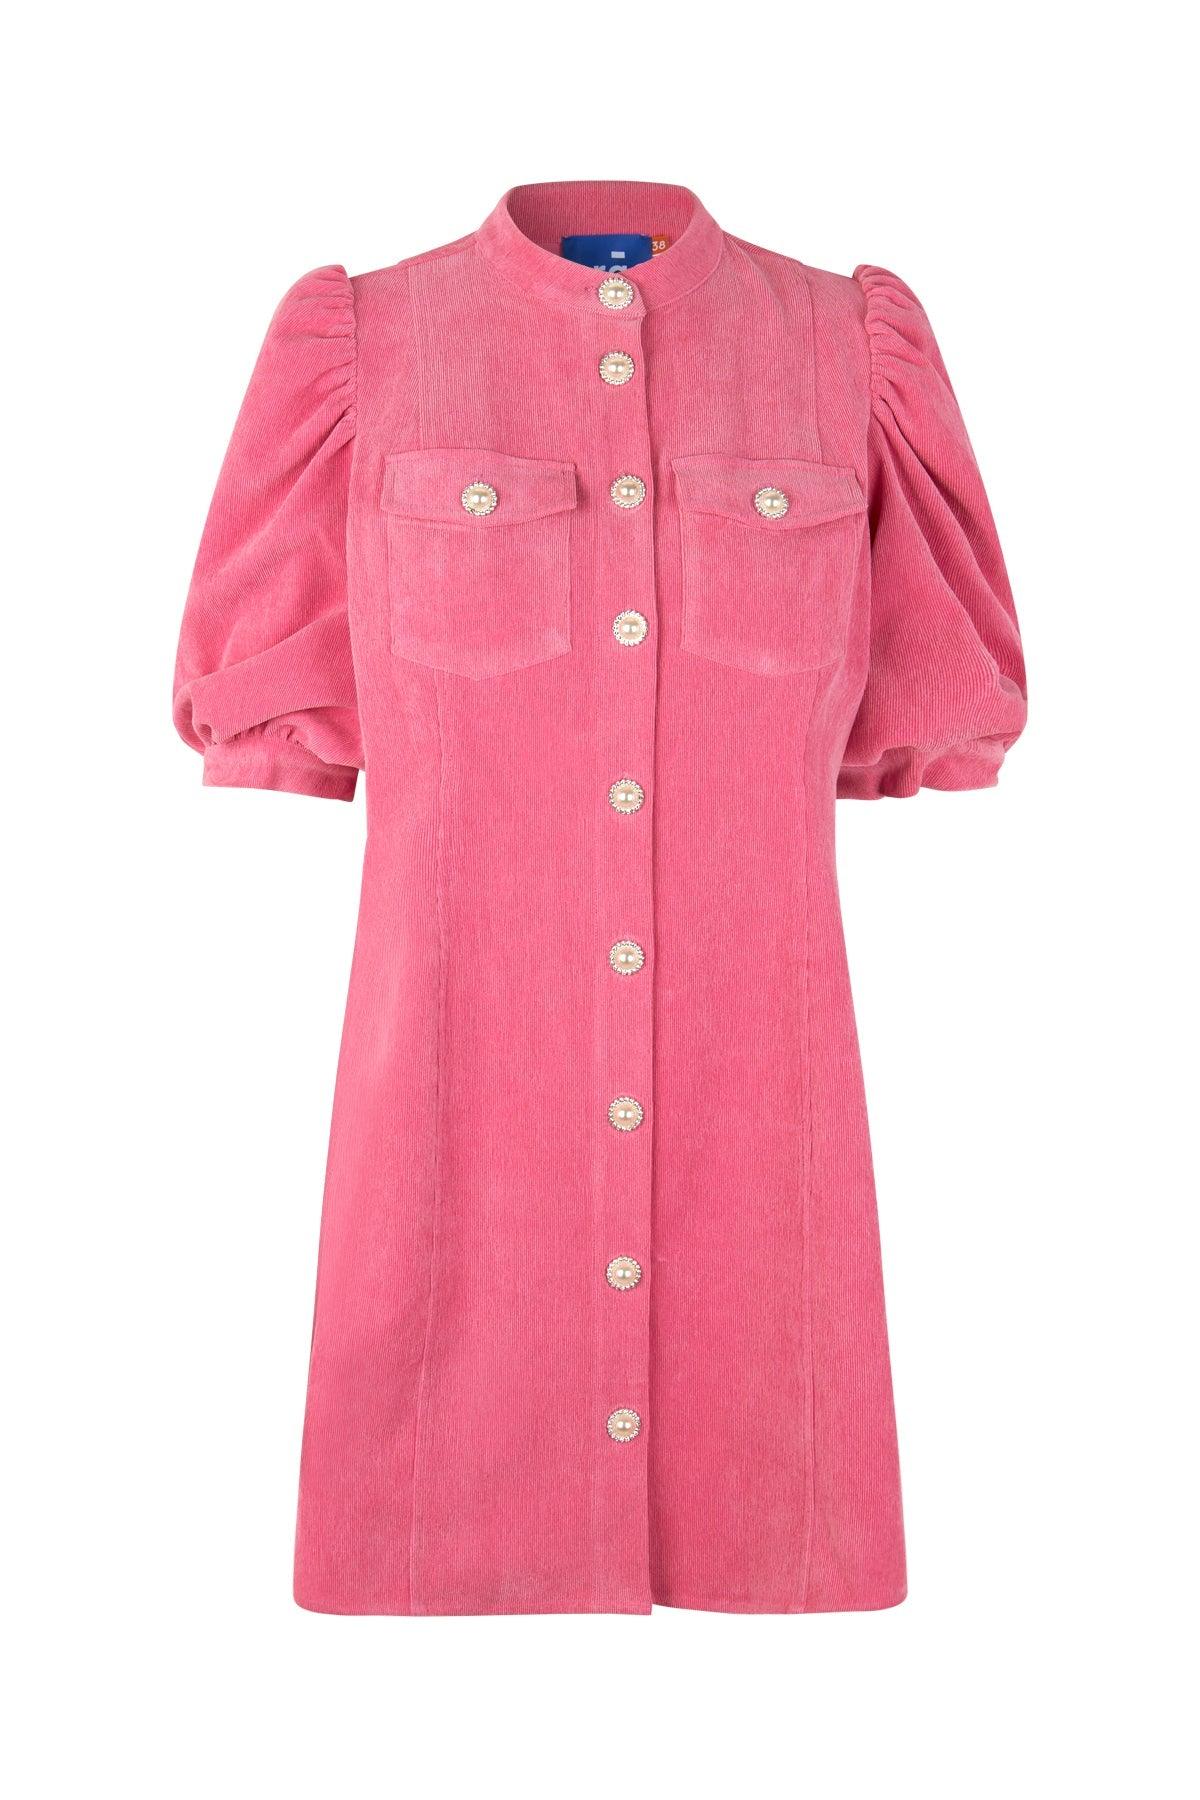 Cras - Anni Dress Aurora Pink - No22 Damplassen